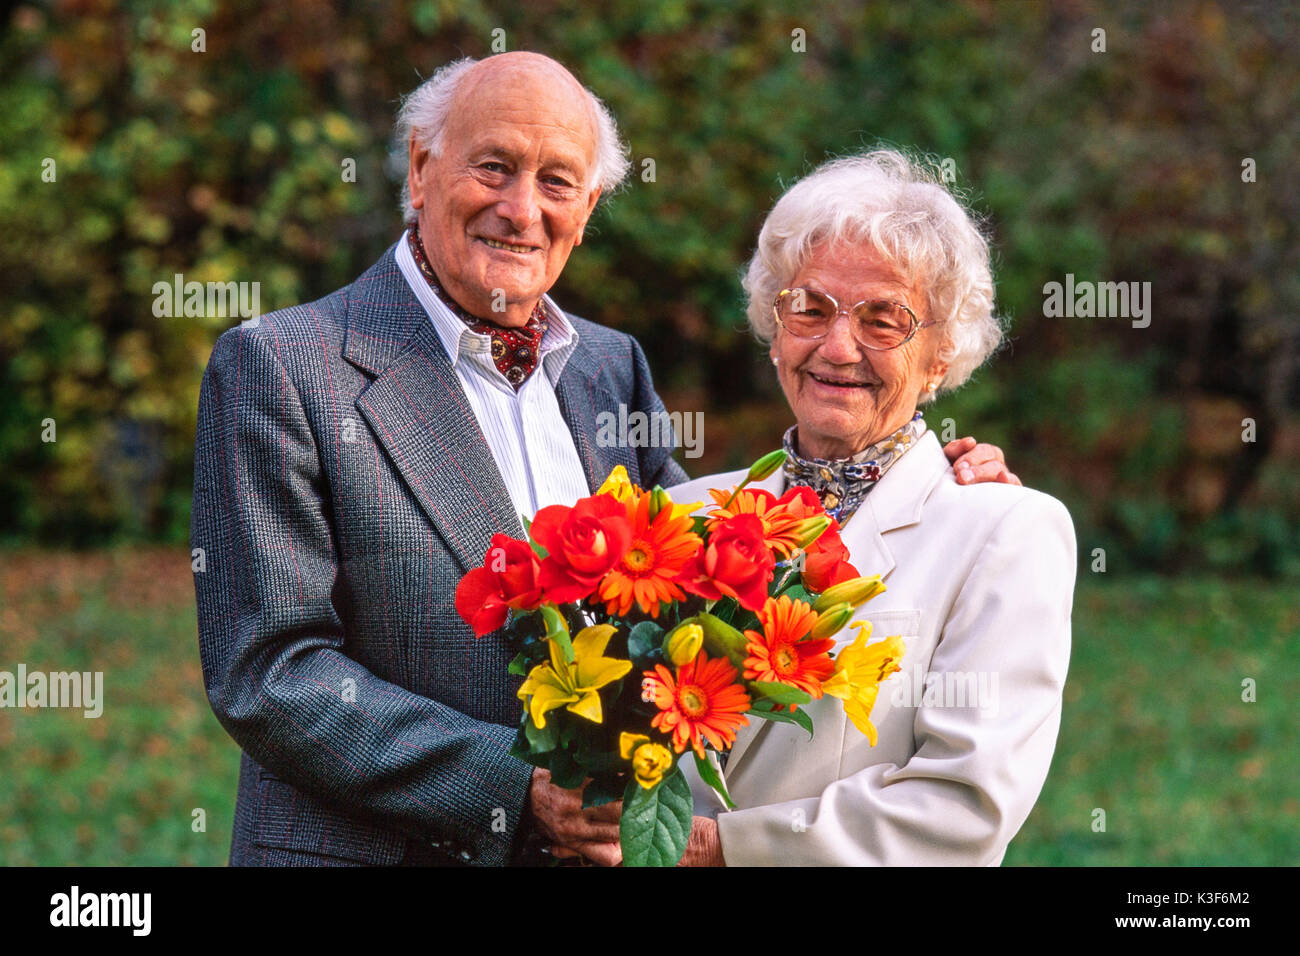 Senior Citizen's giovane con bouquet Foto Stock